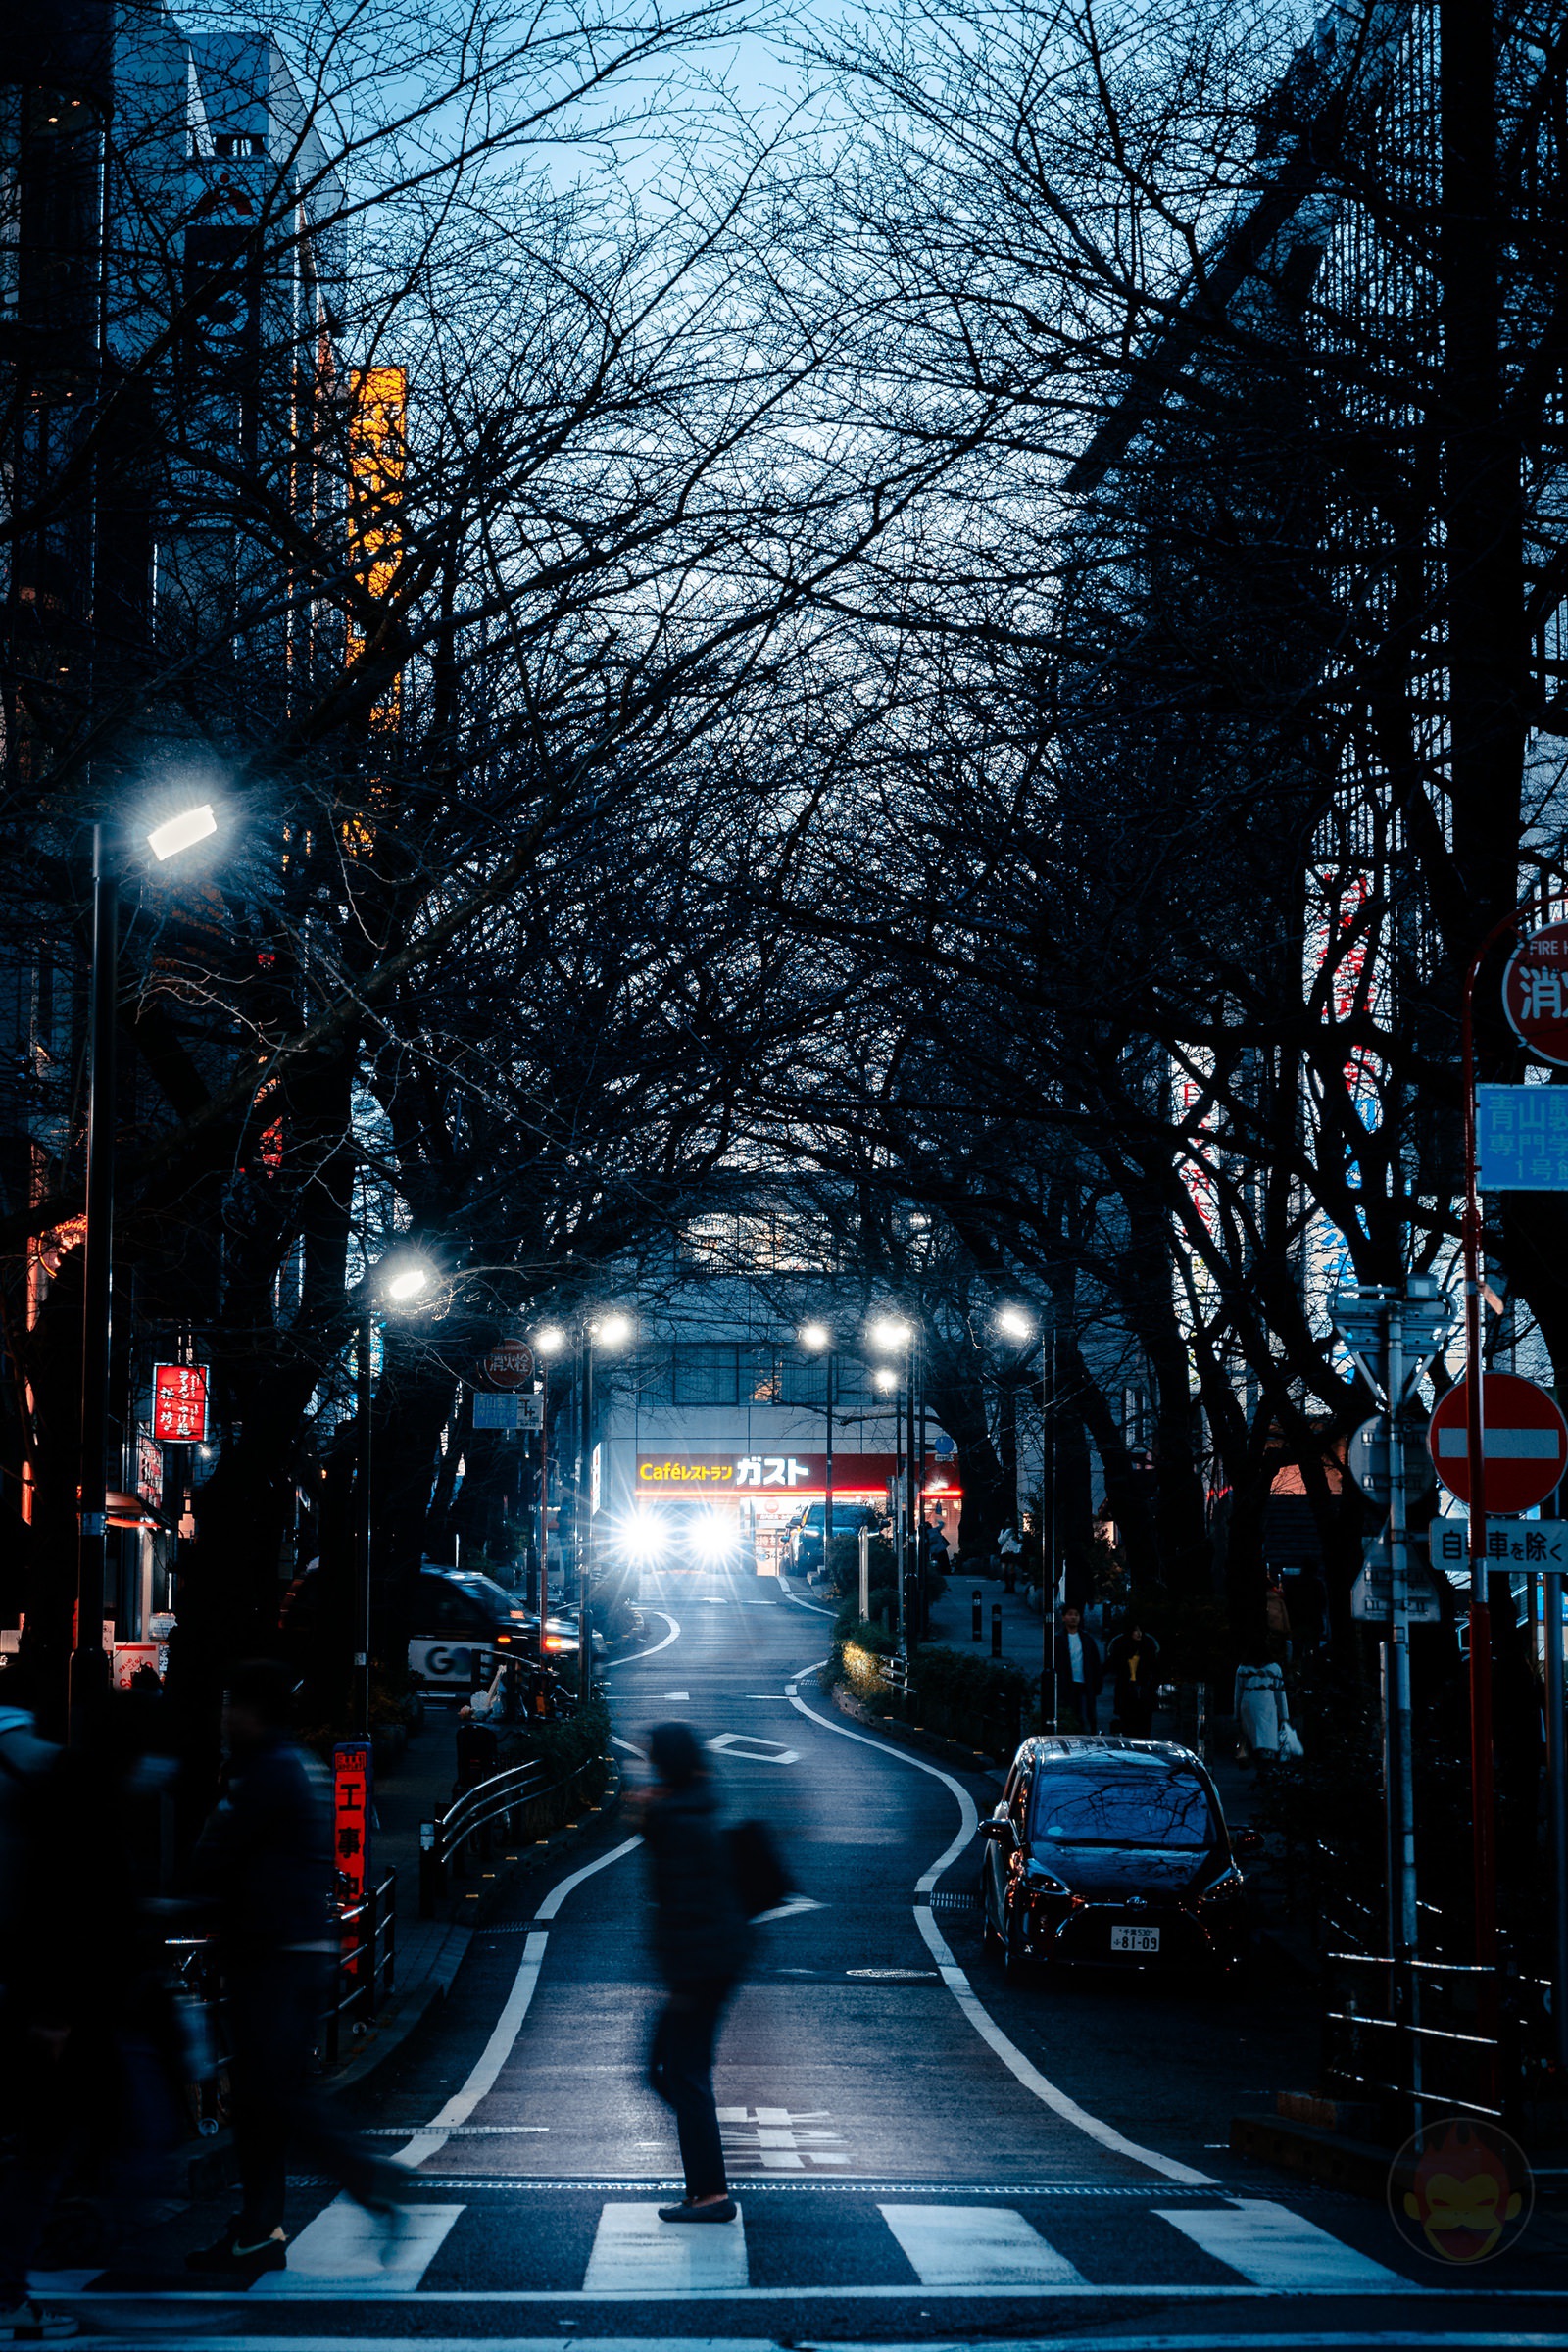 Shibuya Dusk and Night Street Photography with canonr6markII 20